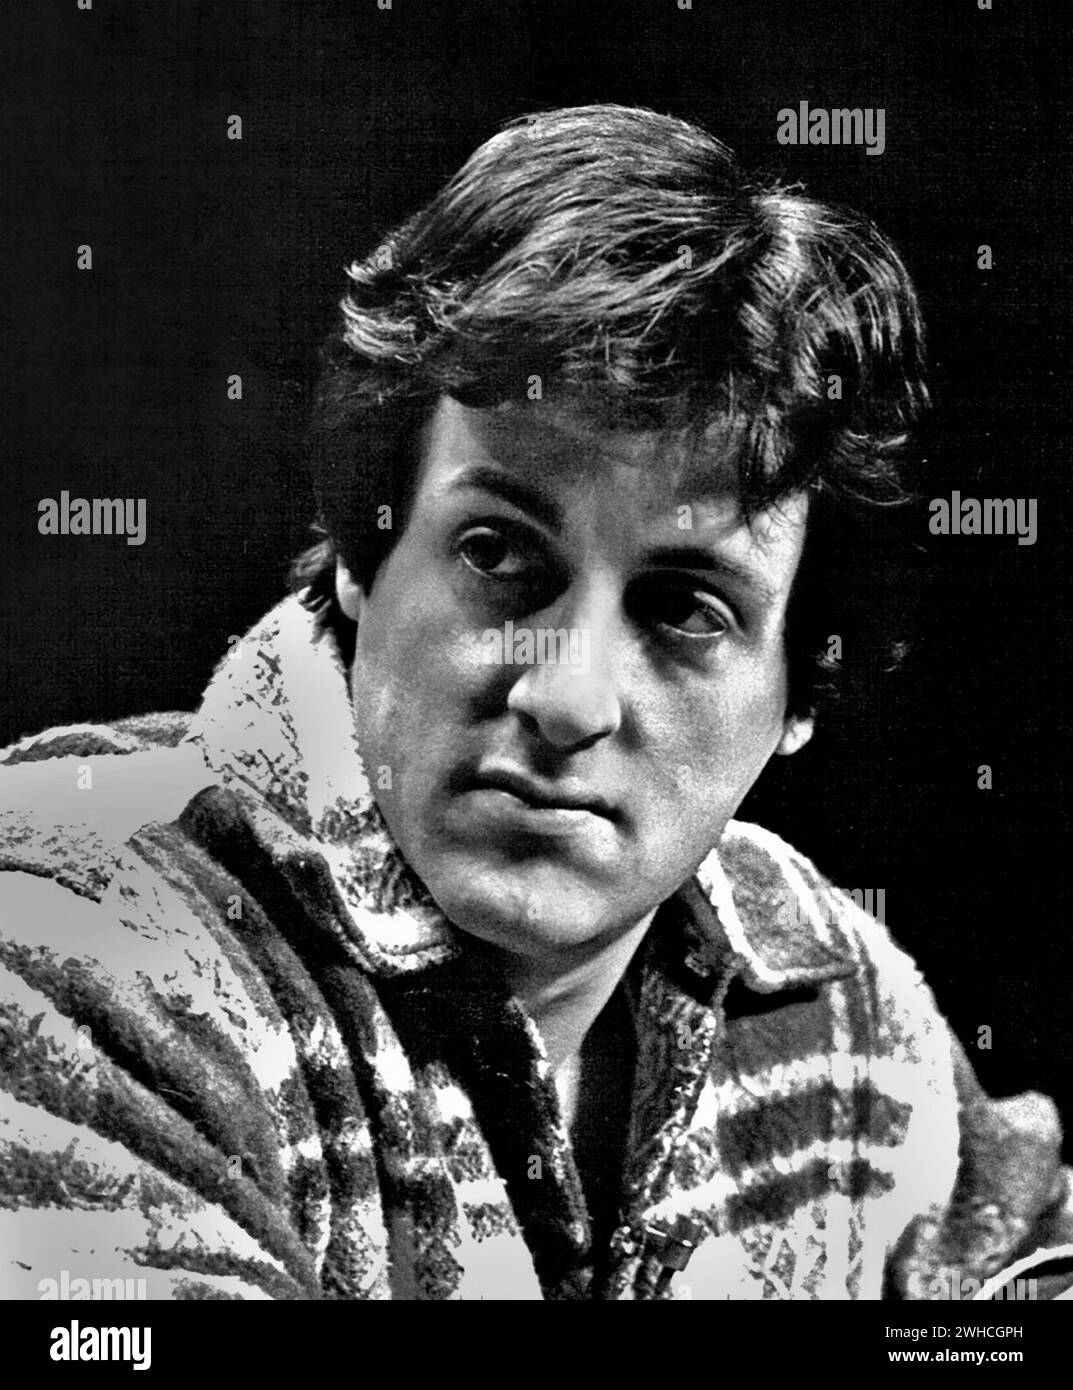 Sylvester Stallone. Portrait de l'acteur et cinéaste américain Sylvester Gardenzio Stallone (né en 1946) en 1977 Banque D'Images